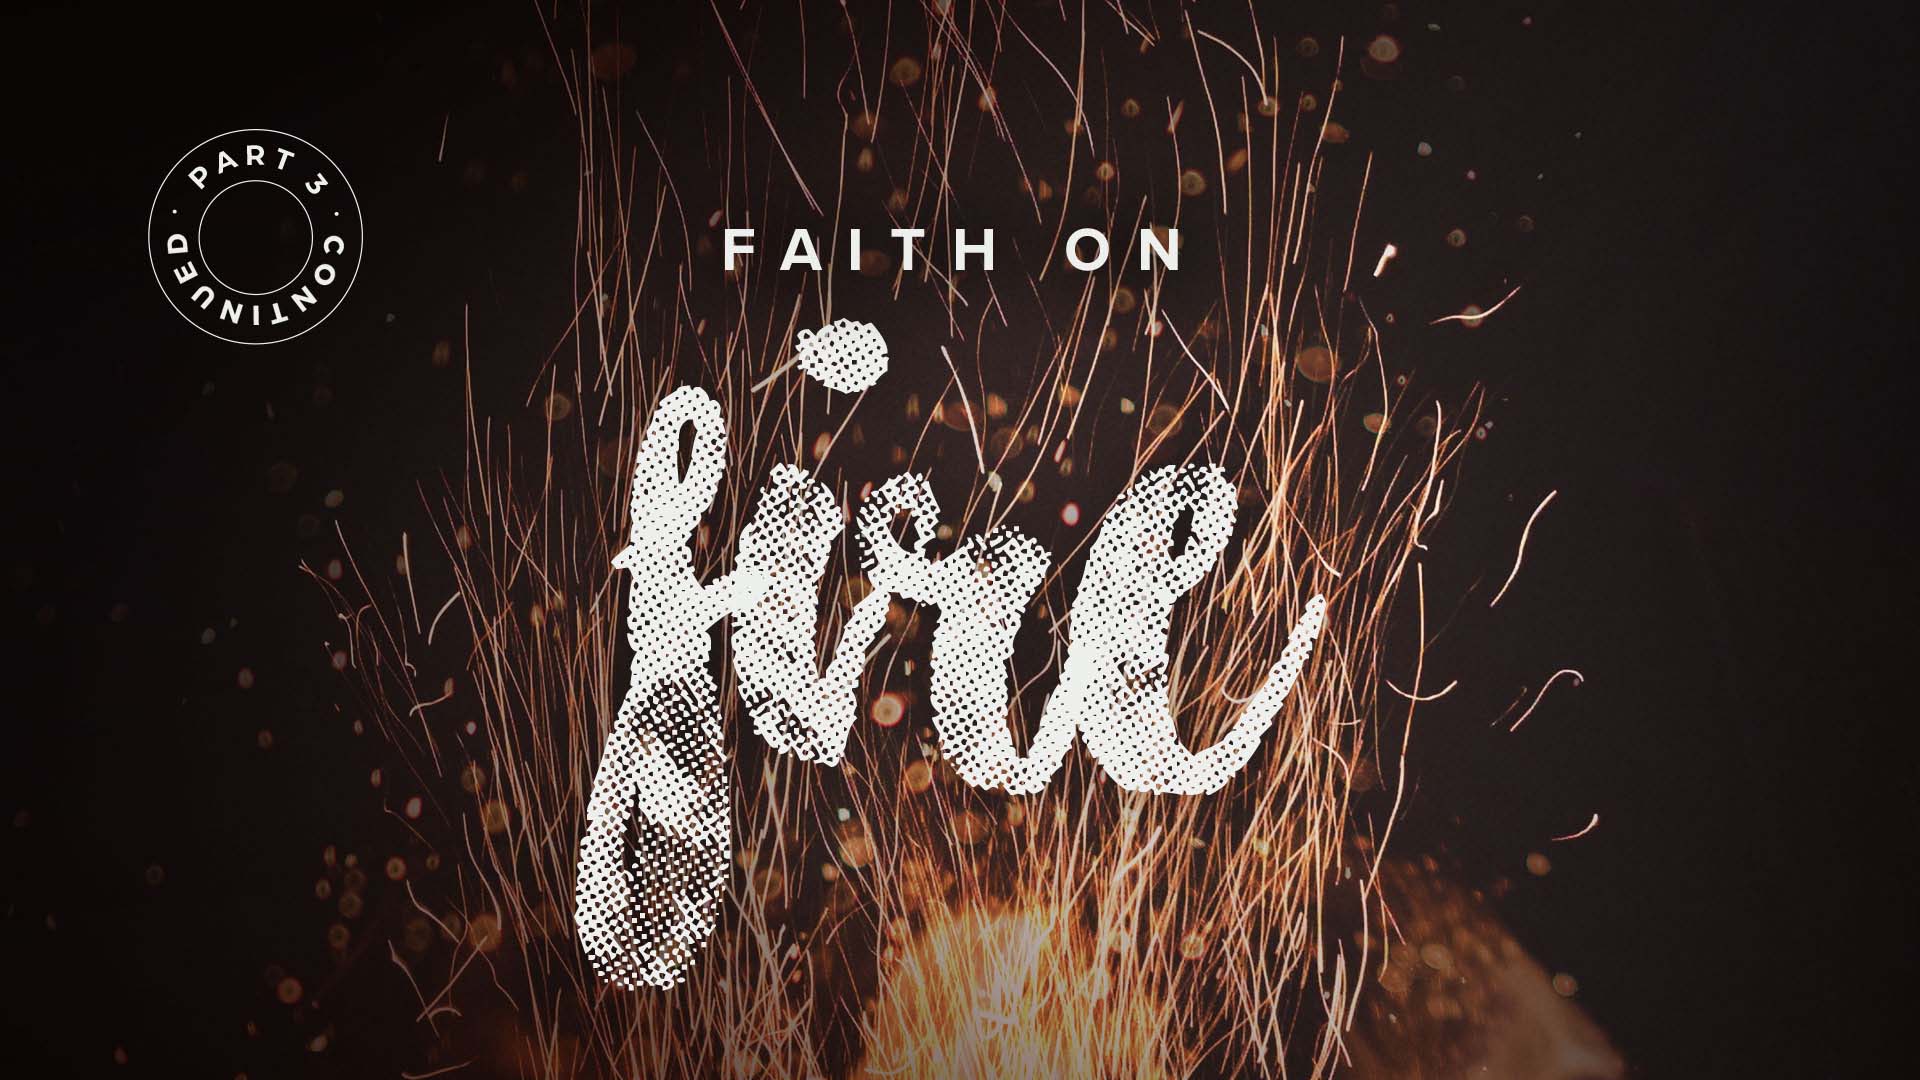 Faith On Fire – Part 3 Continued